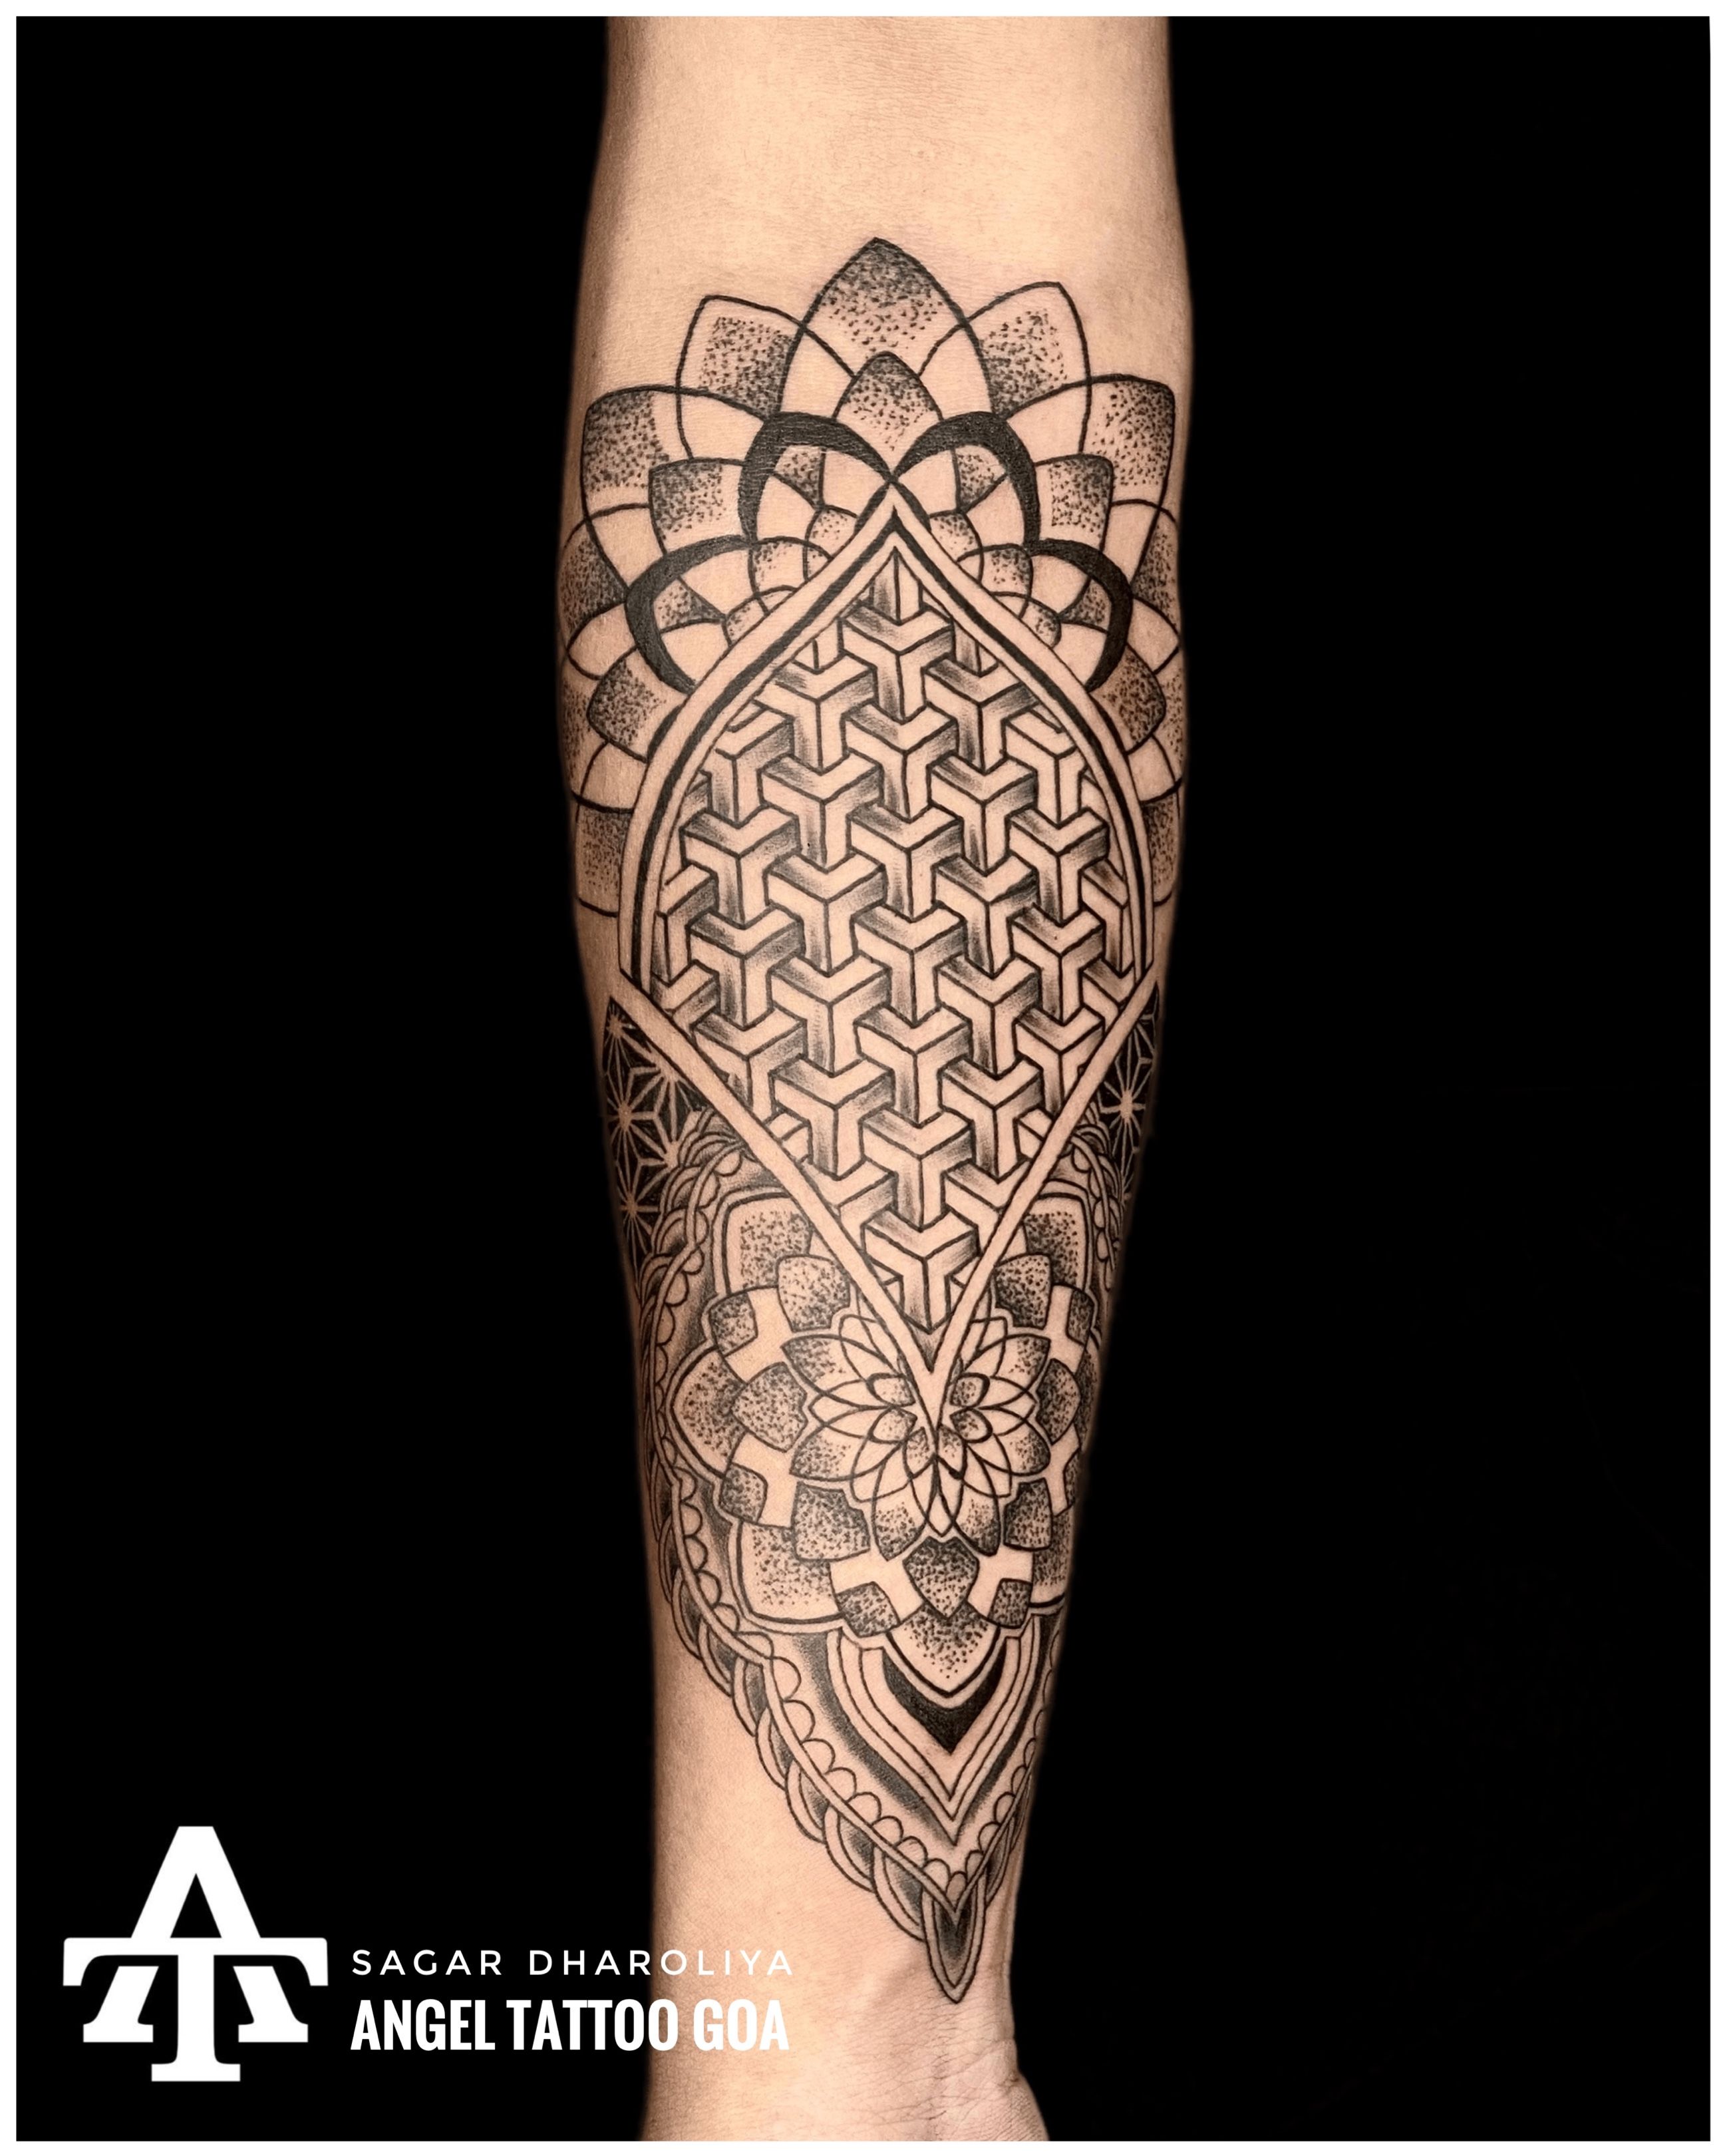 Goa tattoo krish tattoo studio by Subham Sarkar - Issuu